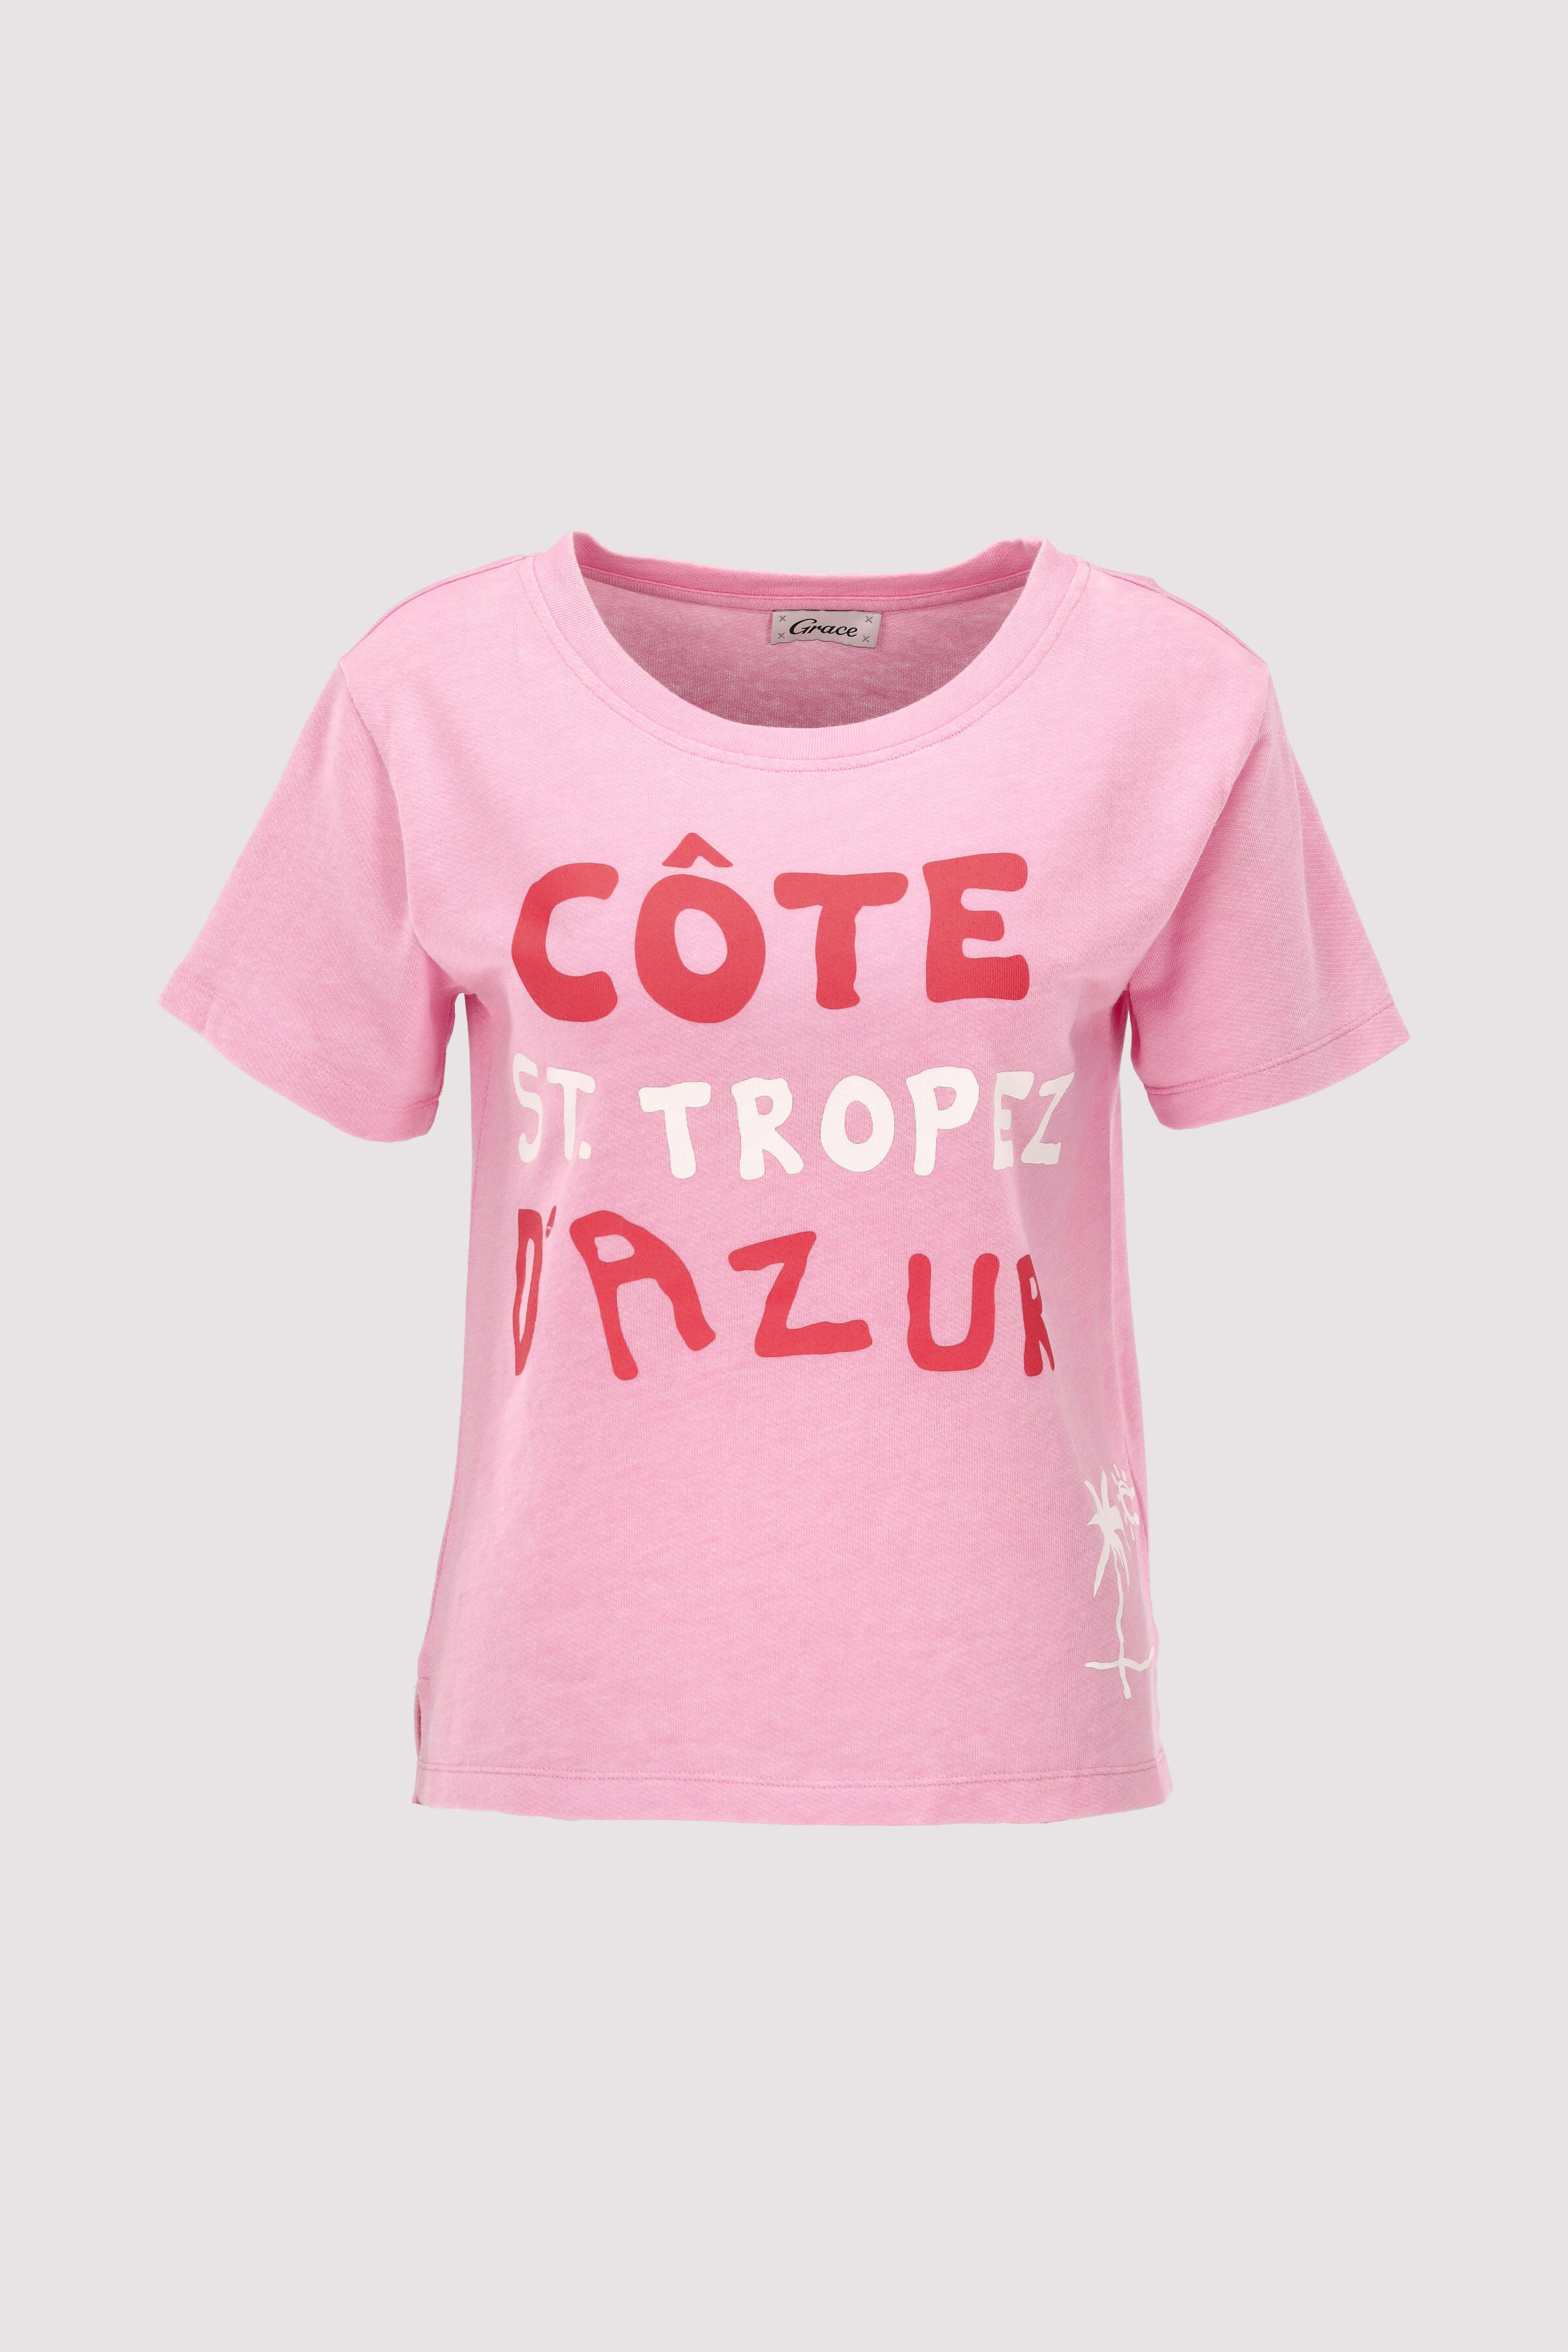 T-Shirt St. Tropez | Pink | XL | 4065837050846